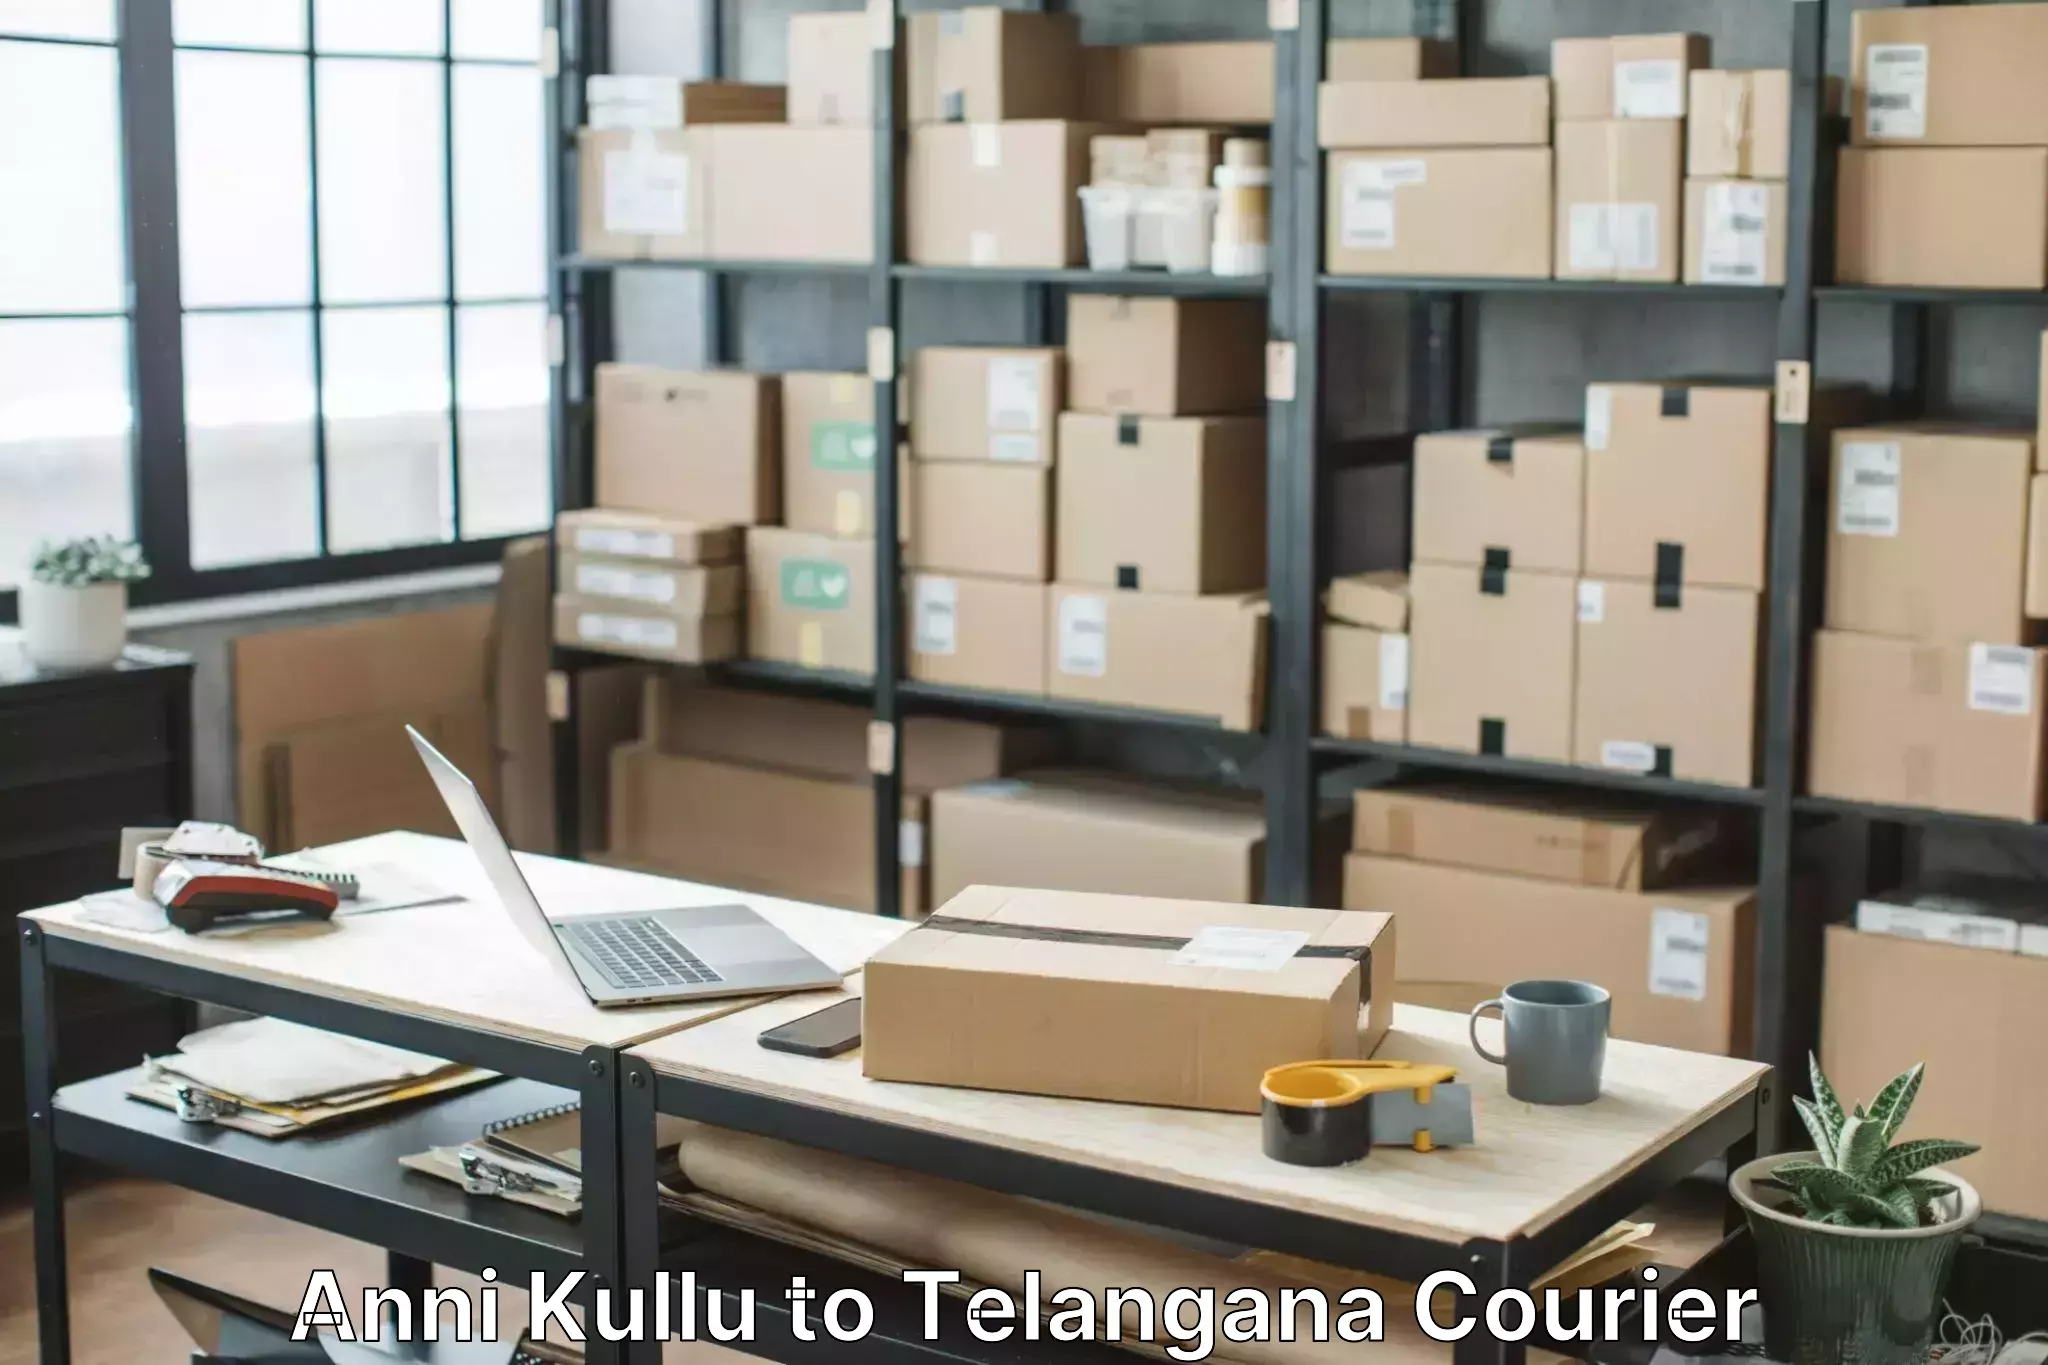 Household moving experts Anni Kullu to Manuguru